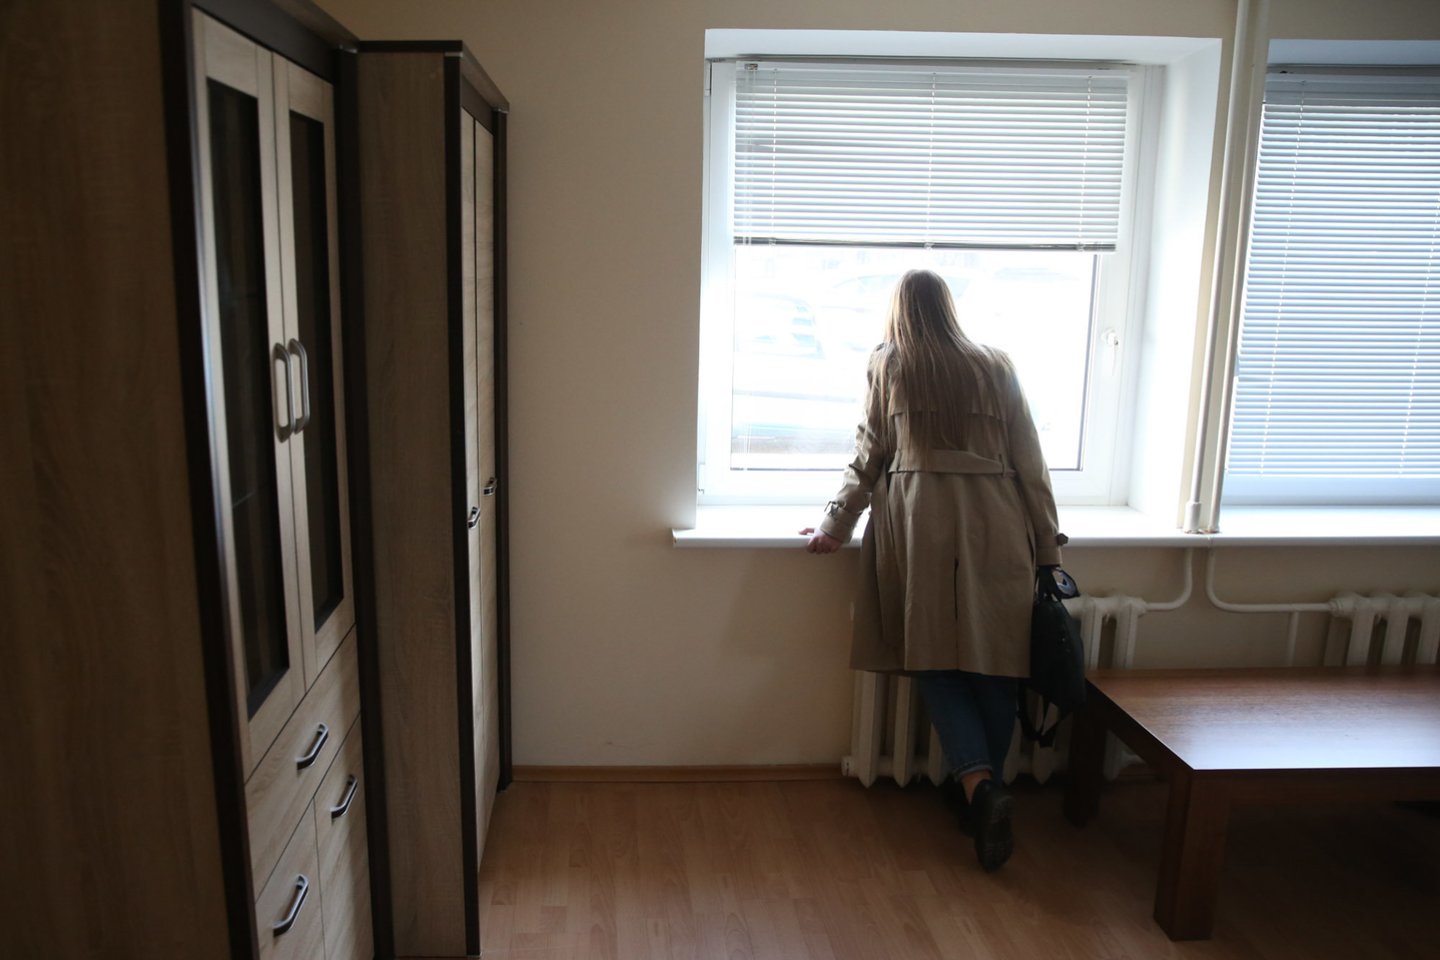 Seimo viešbutyje ruošiami laisvi butai pabėgėliams iš Ukrainos.<br>R.Danisevičiaus nuotr.